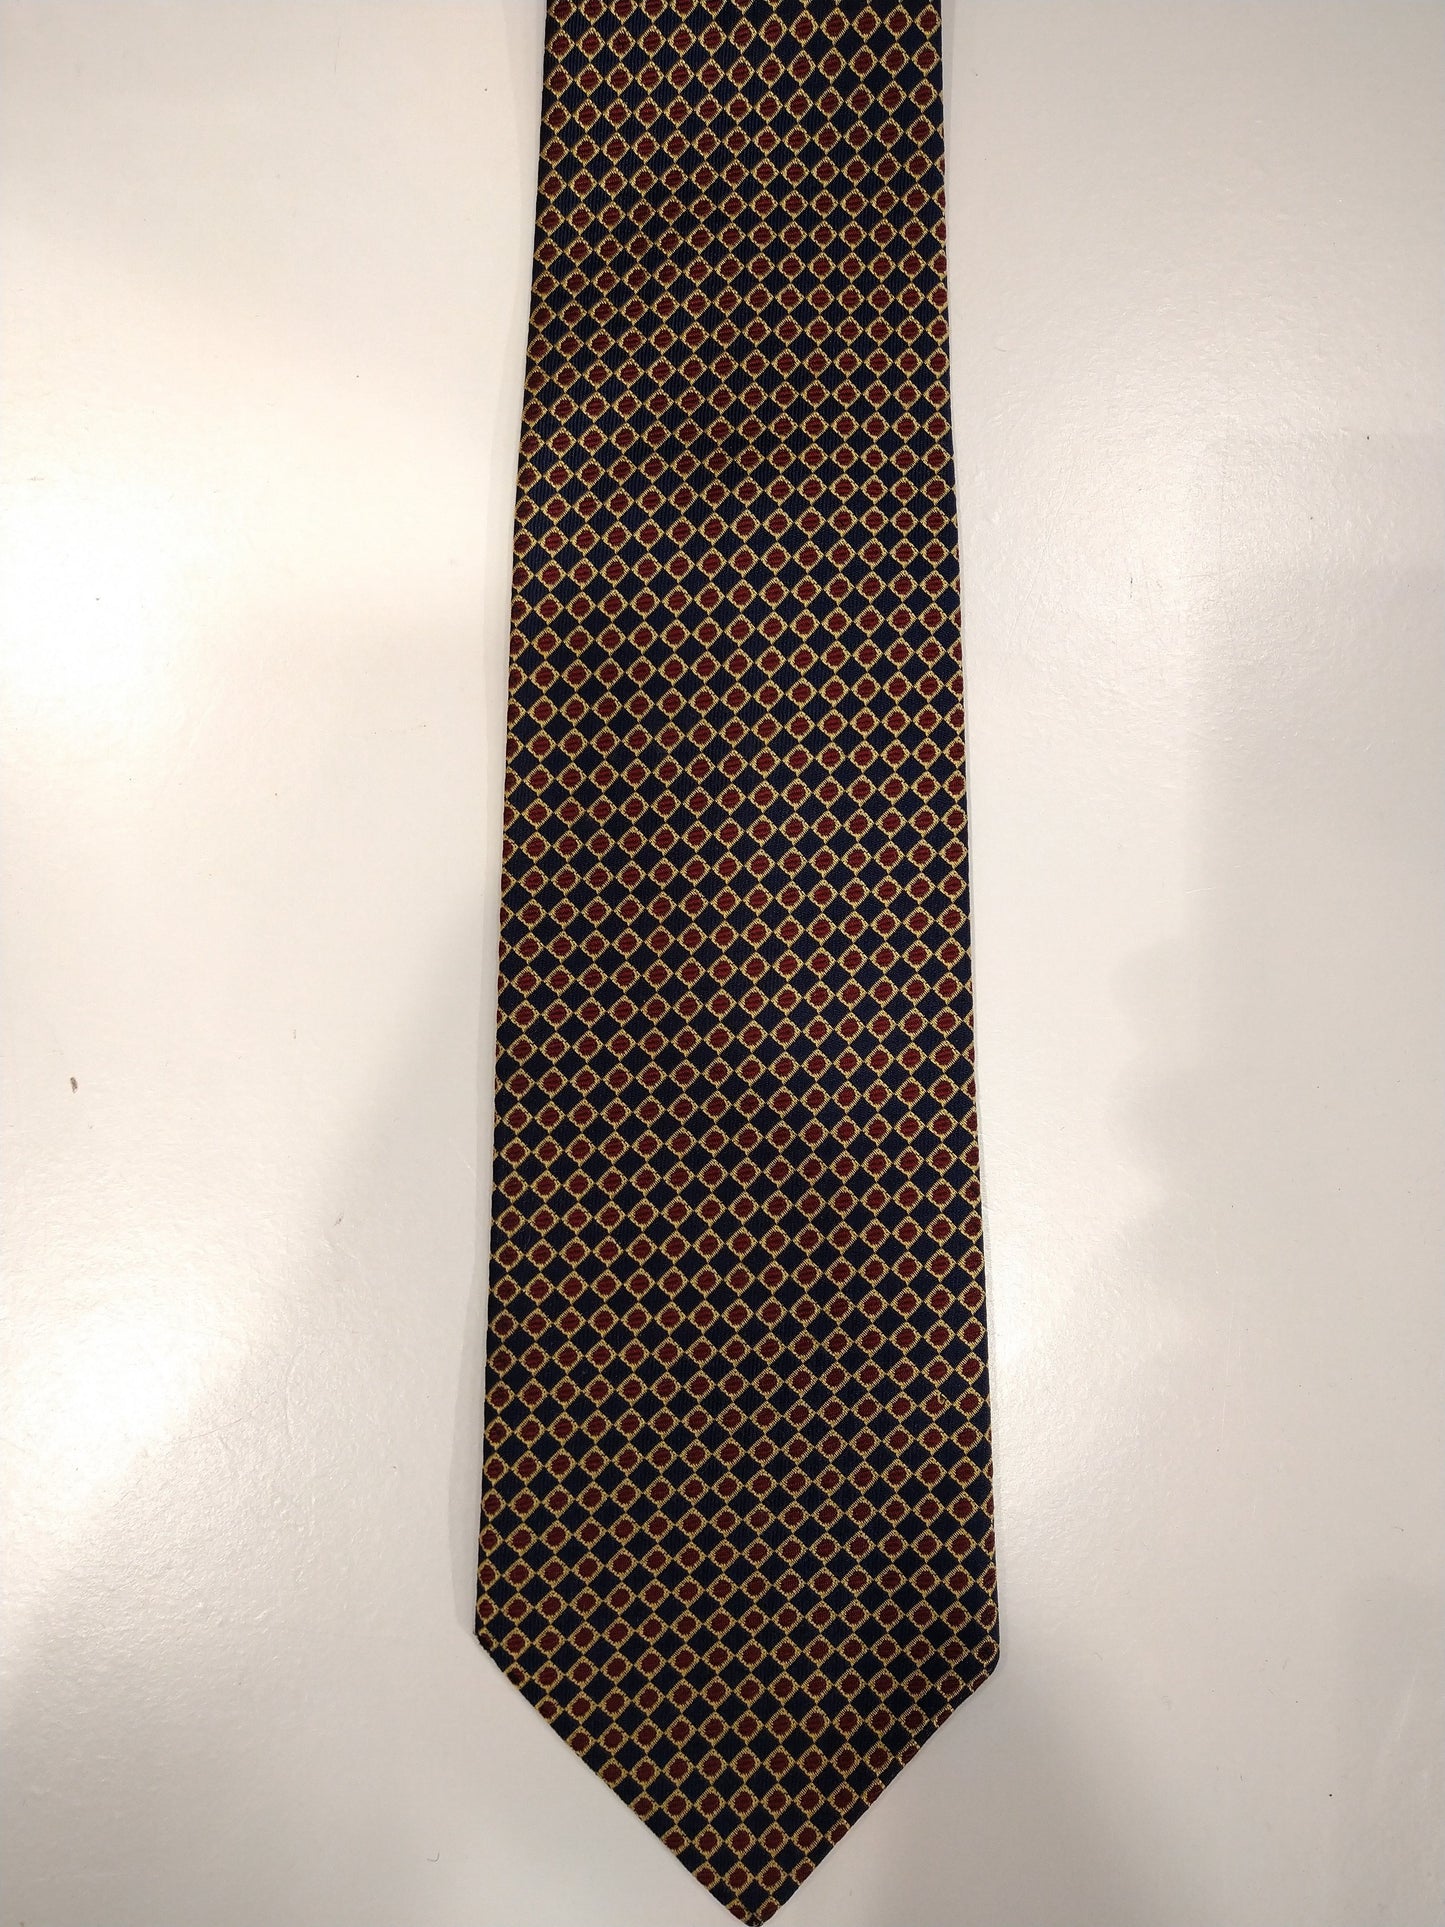 Cravatta di seta vintage. Blu con motivo oro / rosso.